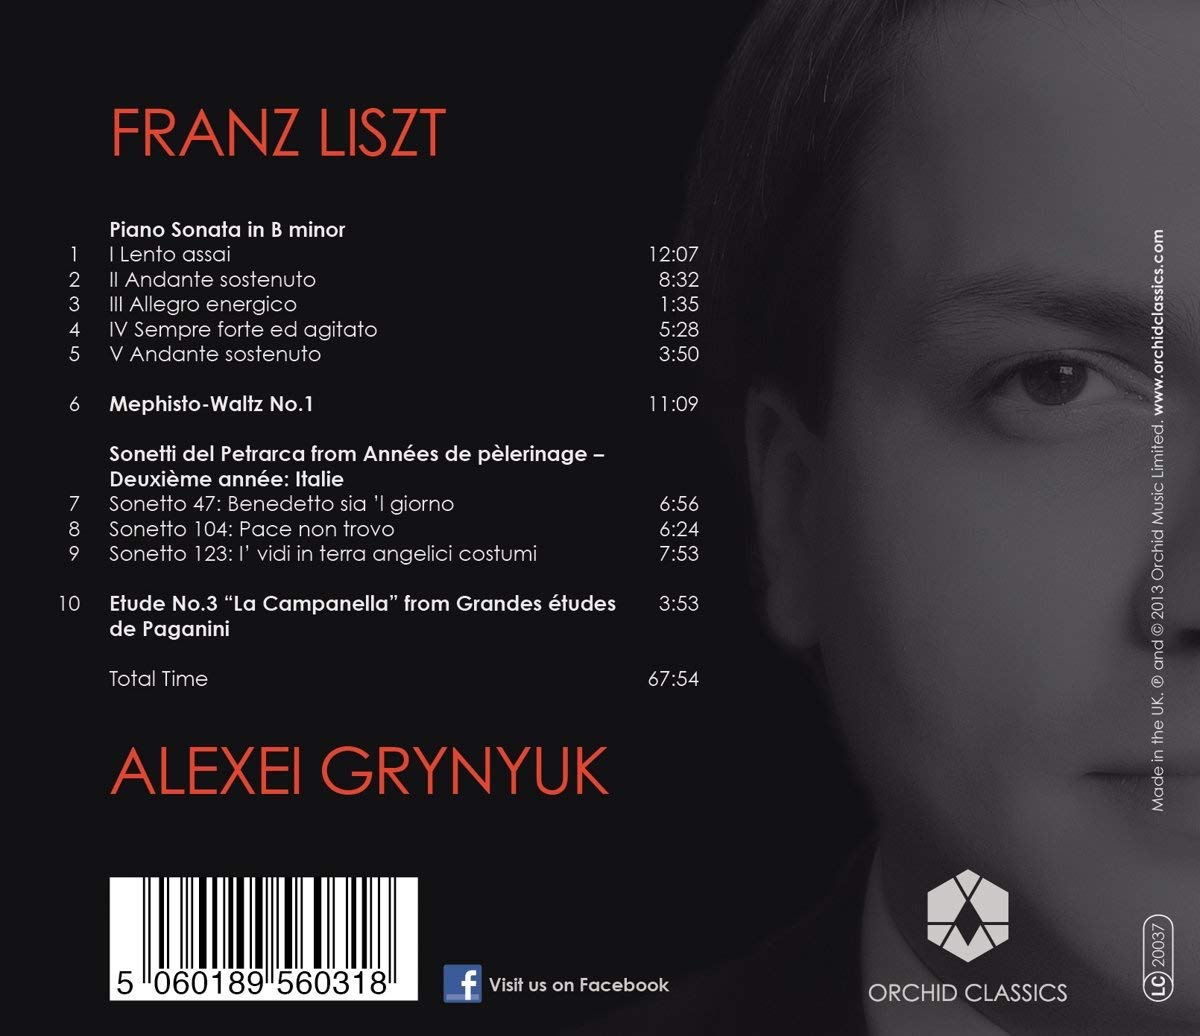 Liszt: Piano Sonata in B minor, Mephisto-Waltz, "La Campanella" - slide-1